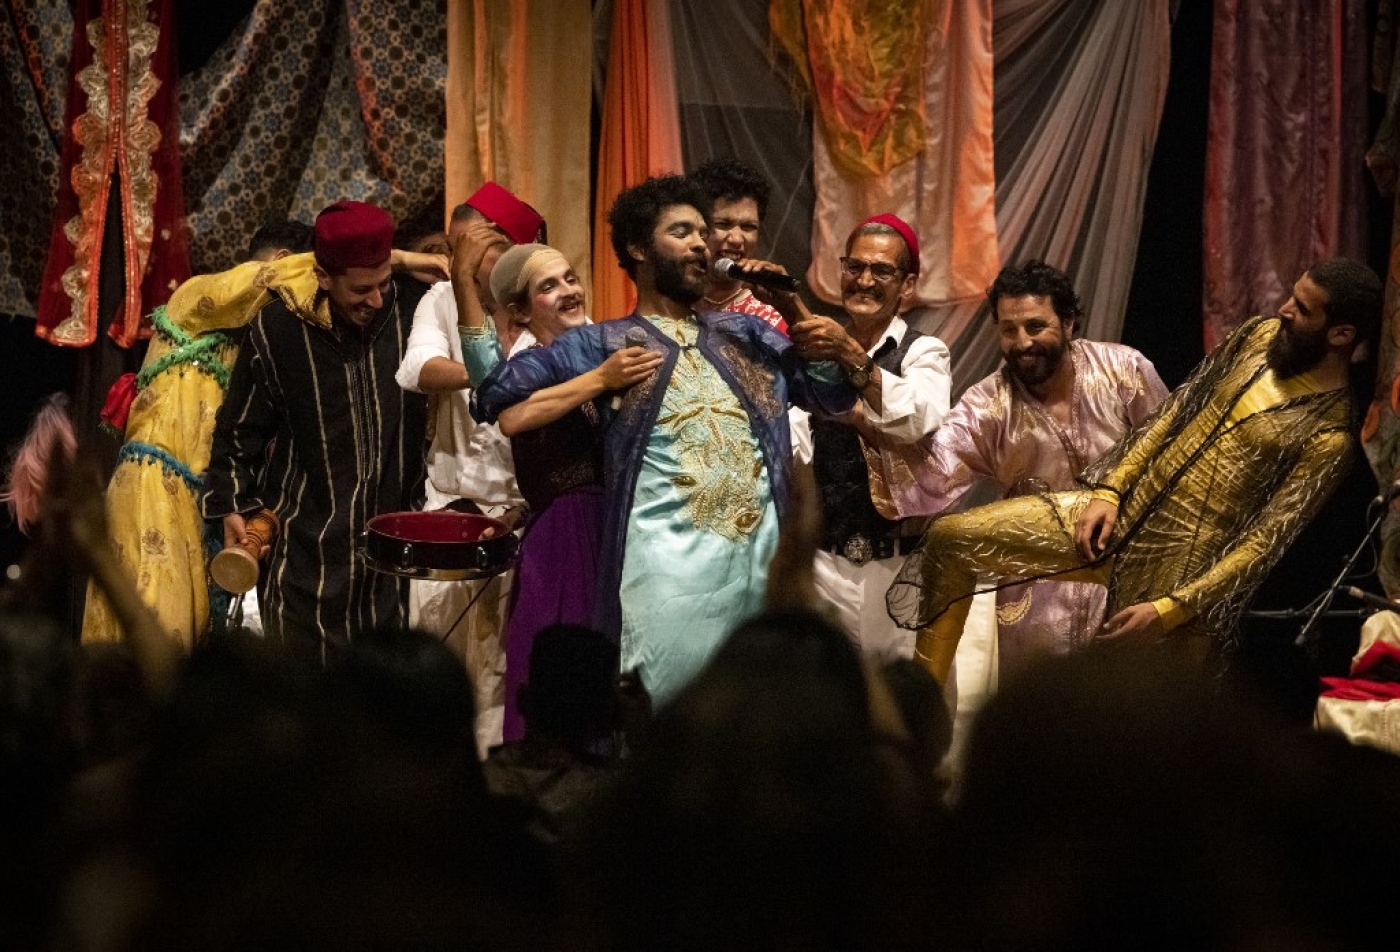 Des membres de la troupe entièrement masculine « Kabareh Cheikhats » se produisent dans un théâtre de la capitale marocaine Rabat, le 3 juin 2022 (AFP/FADEL SENNA)